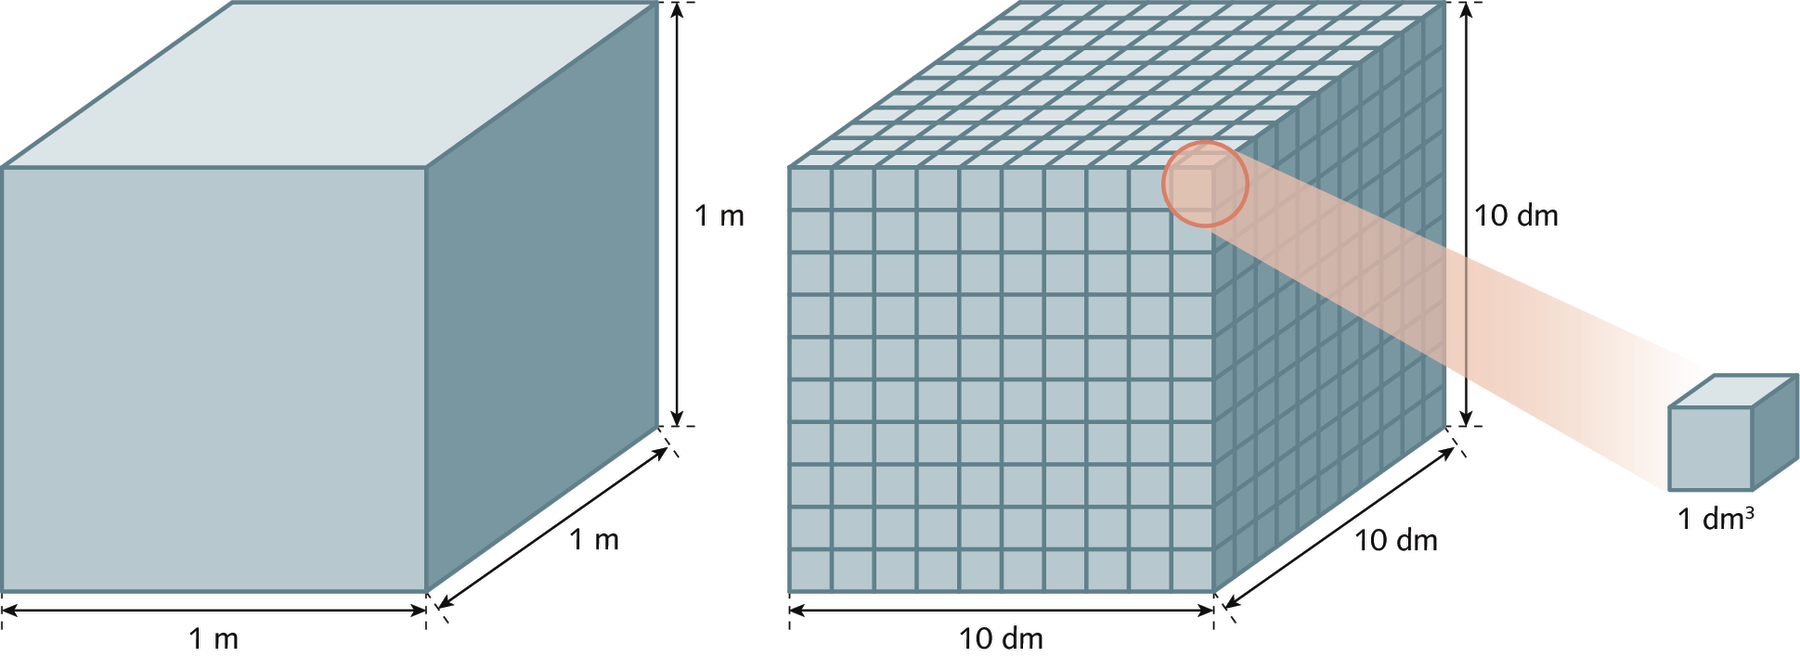 Ilustração. Dois cubos congruentes.
À esquerda, cubo de 1 metro por 1 metro por 1 metro. À direita, cubo de 10 decímetros por 10 decímetros por 10 decímetros. O cubo está dividido em mil cubinhos congruentes. O volume de cada cubinho mede 1 centímetro cúbico.